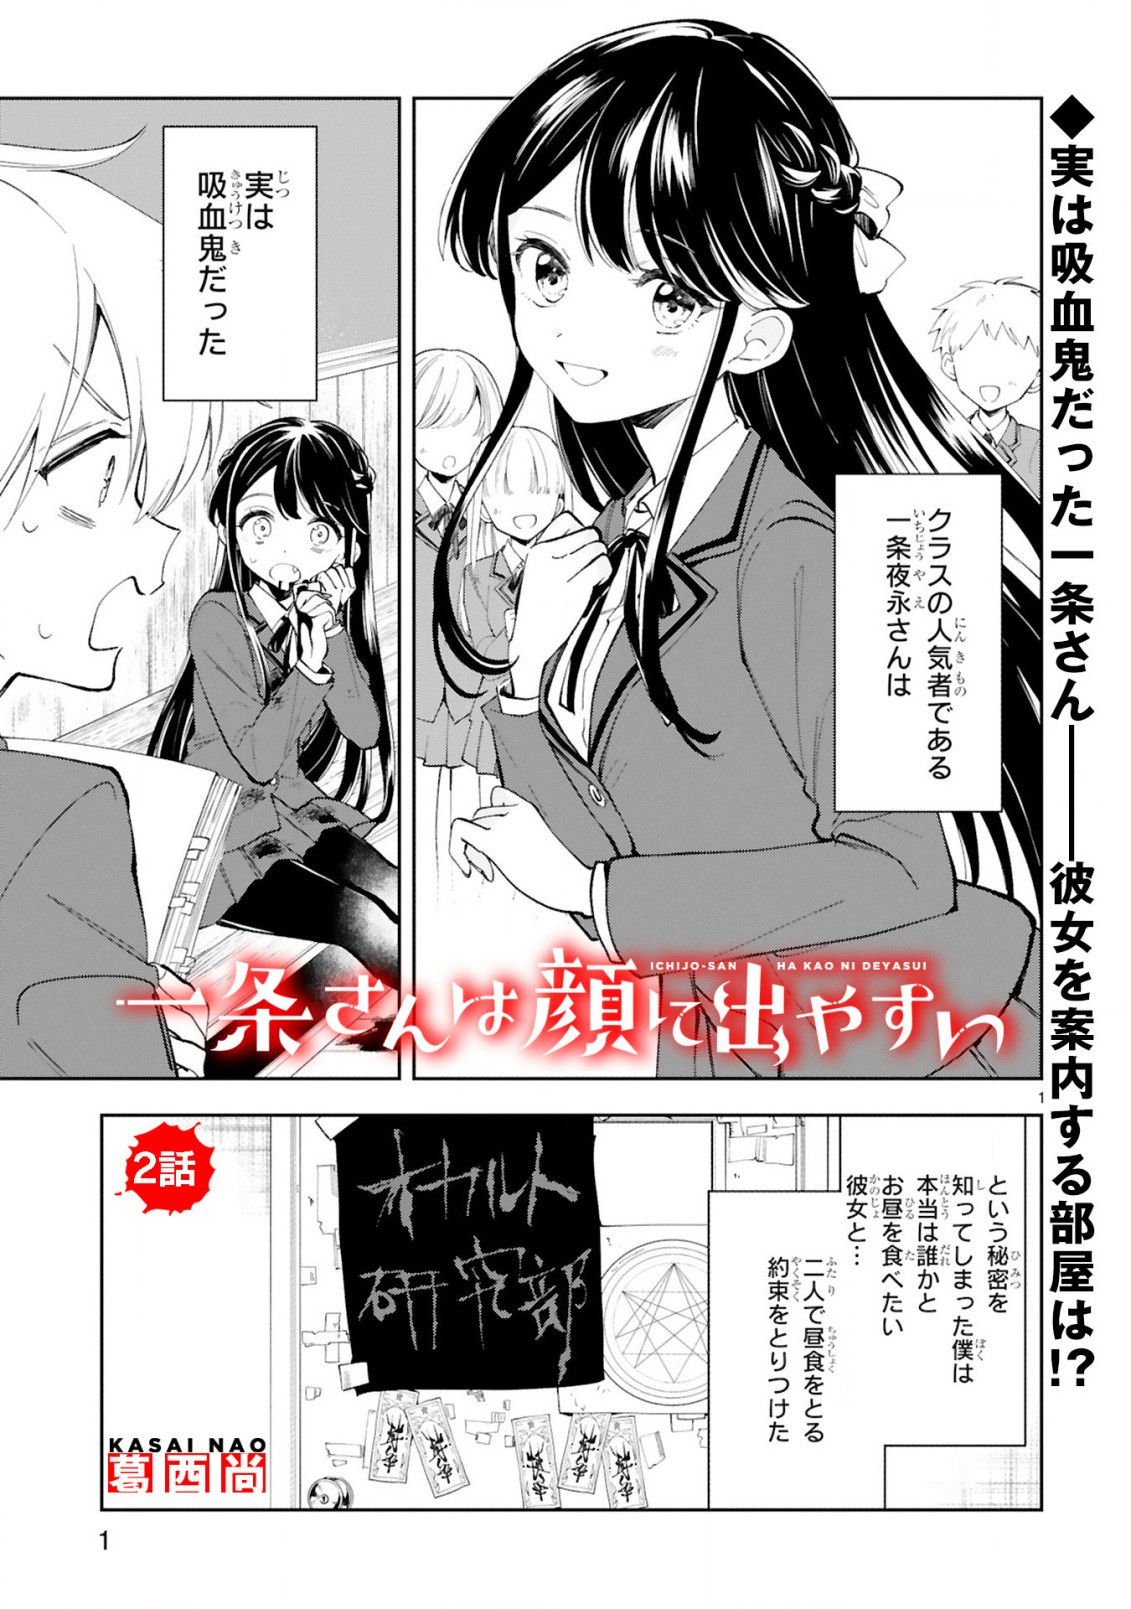 Ichijou-san wa Kao ni Deyasui - Chapter 02 - Page 1